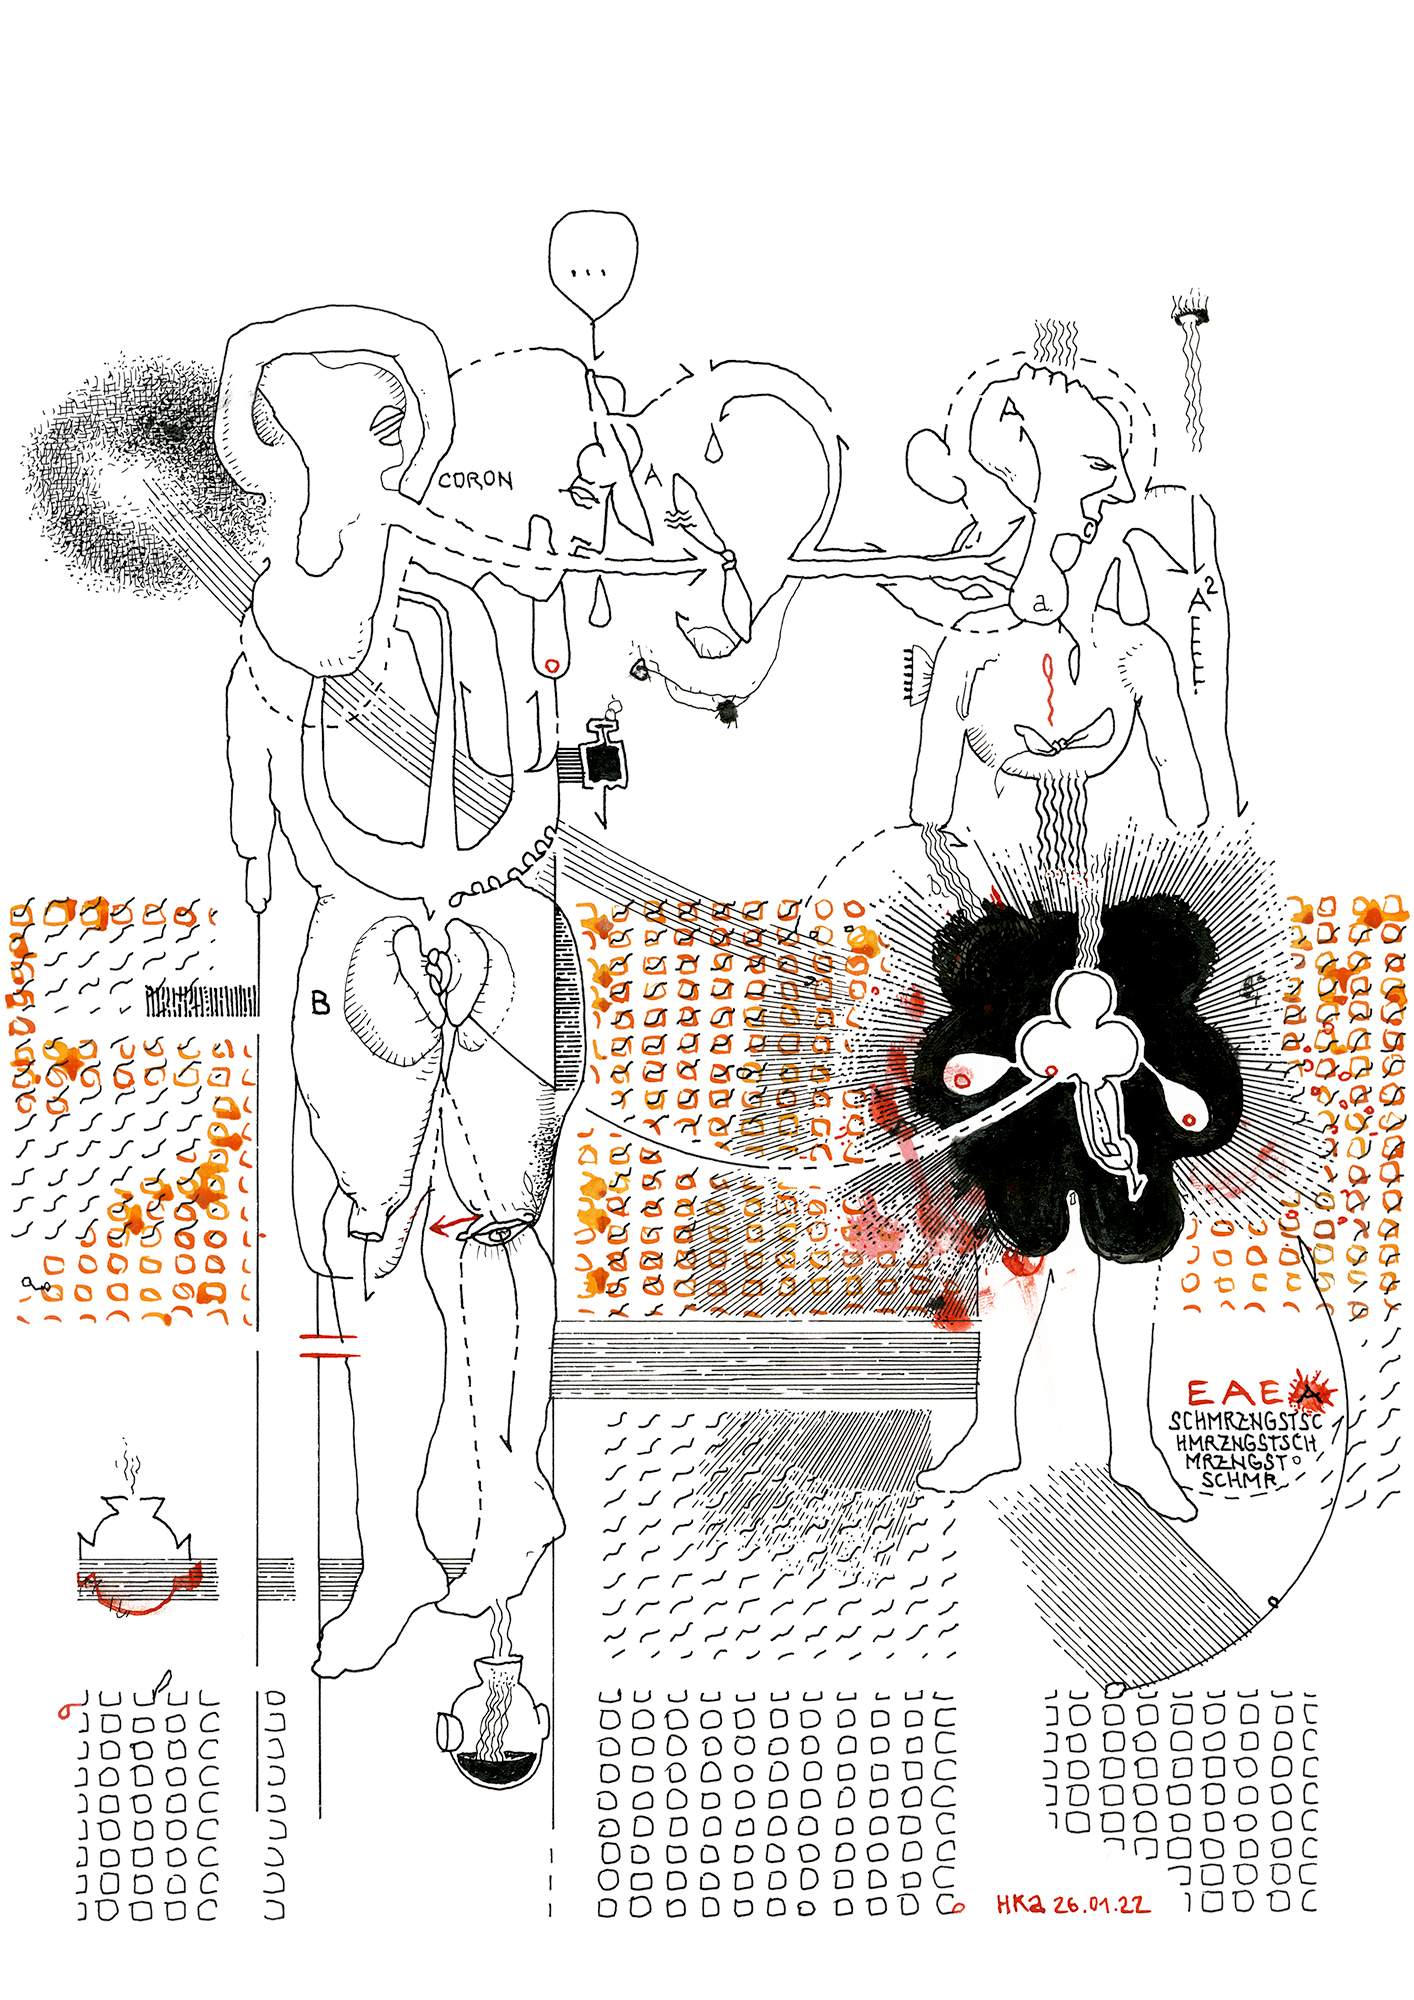 Hannes Kater: Tageszeichnung (Zeichnung/drawing) vom 26.01.2022 (1414 x 2000 Pixel)